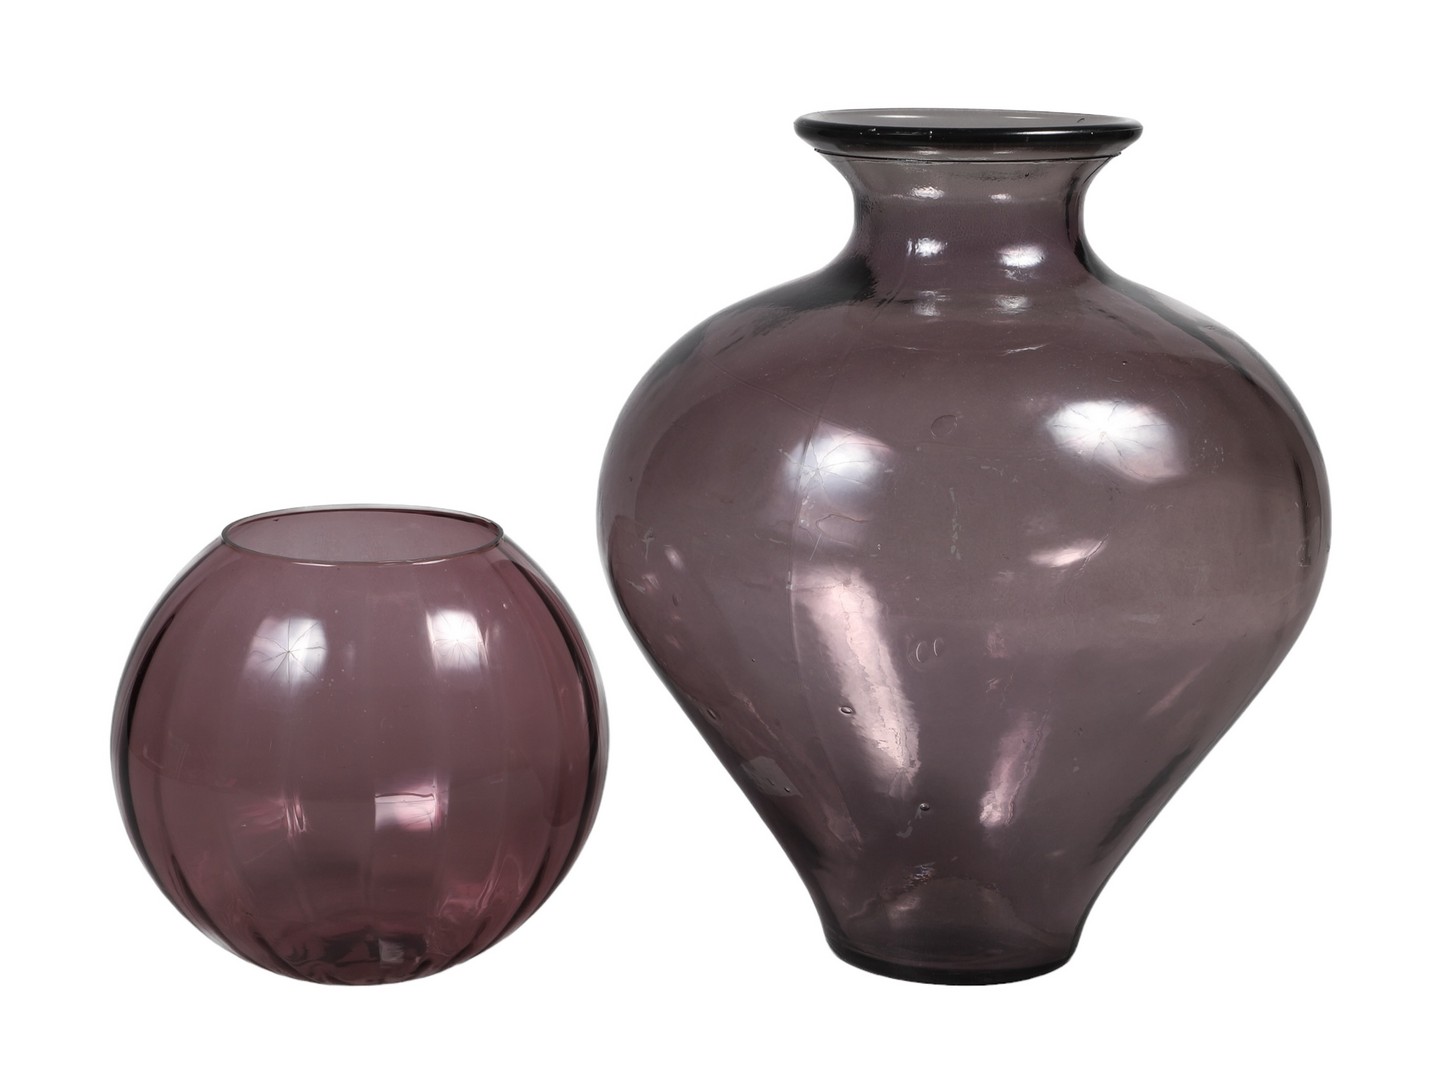  2 Amethyst glass vases c o mold 2e05e3